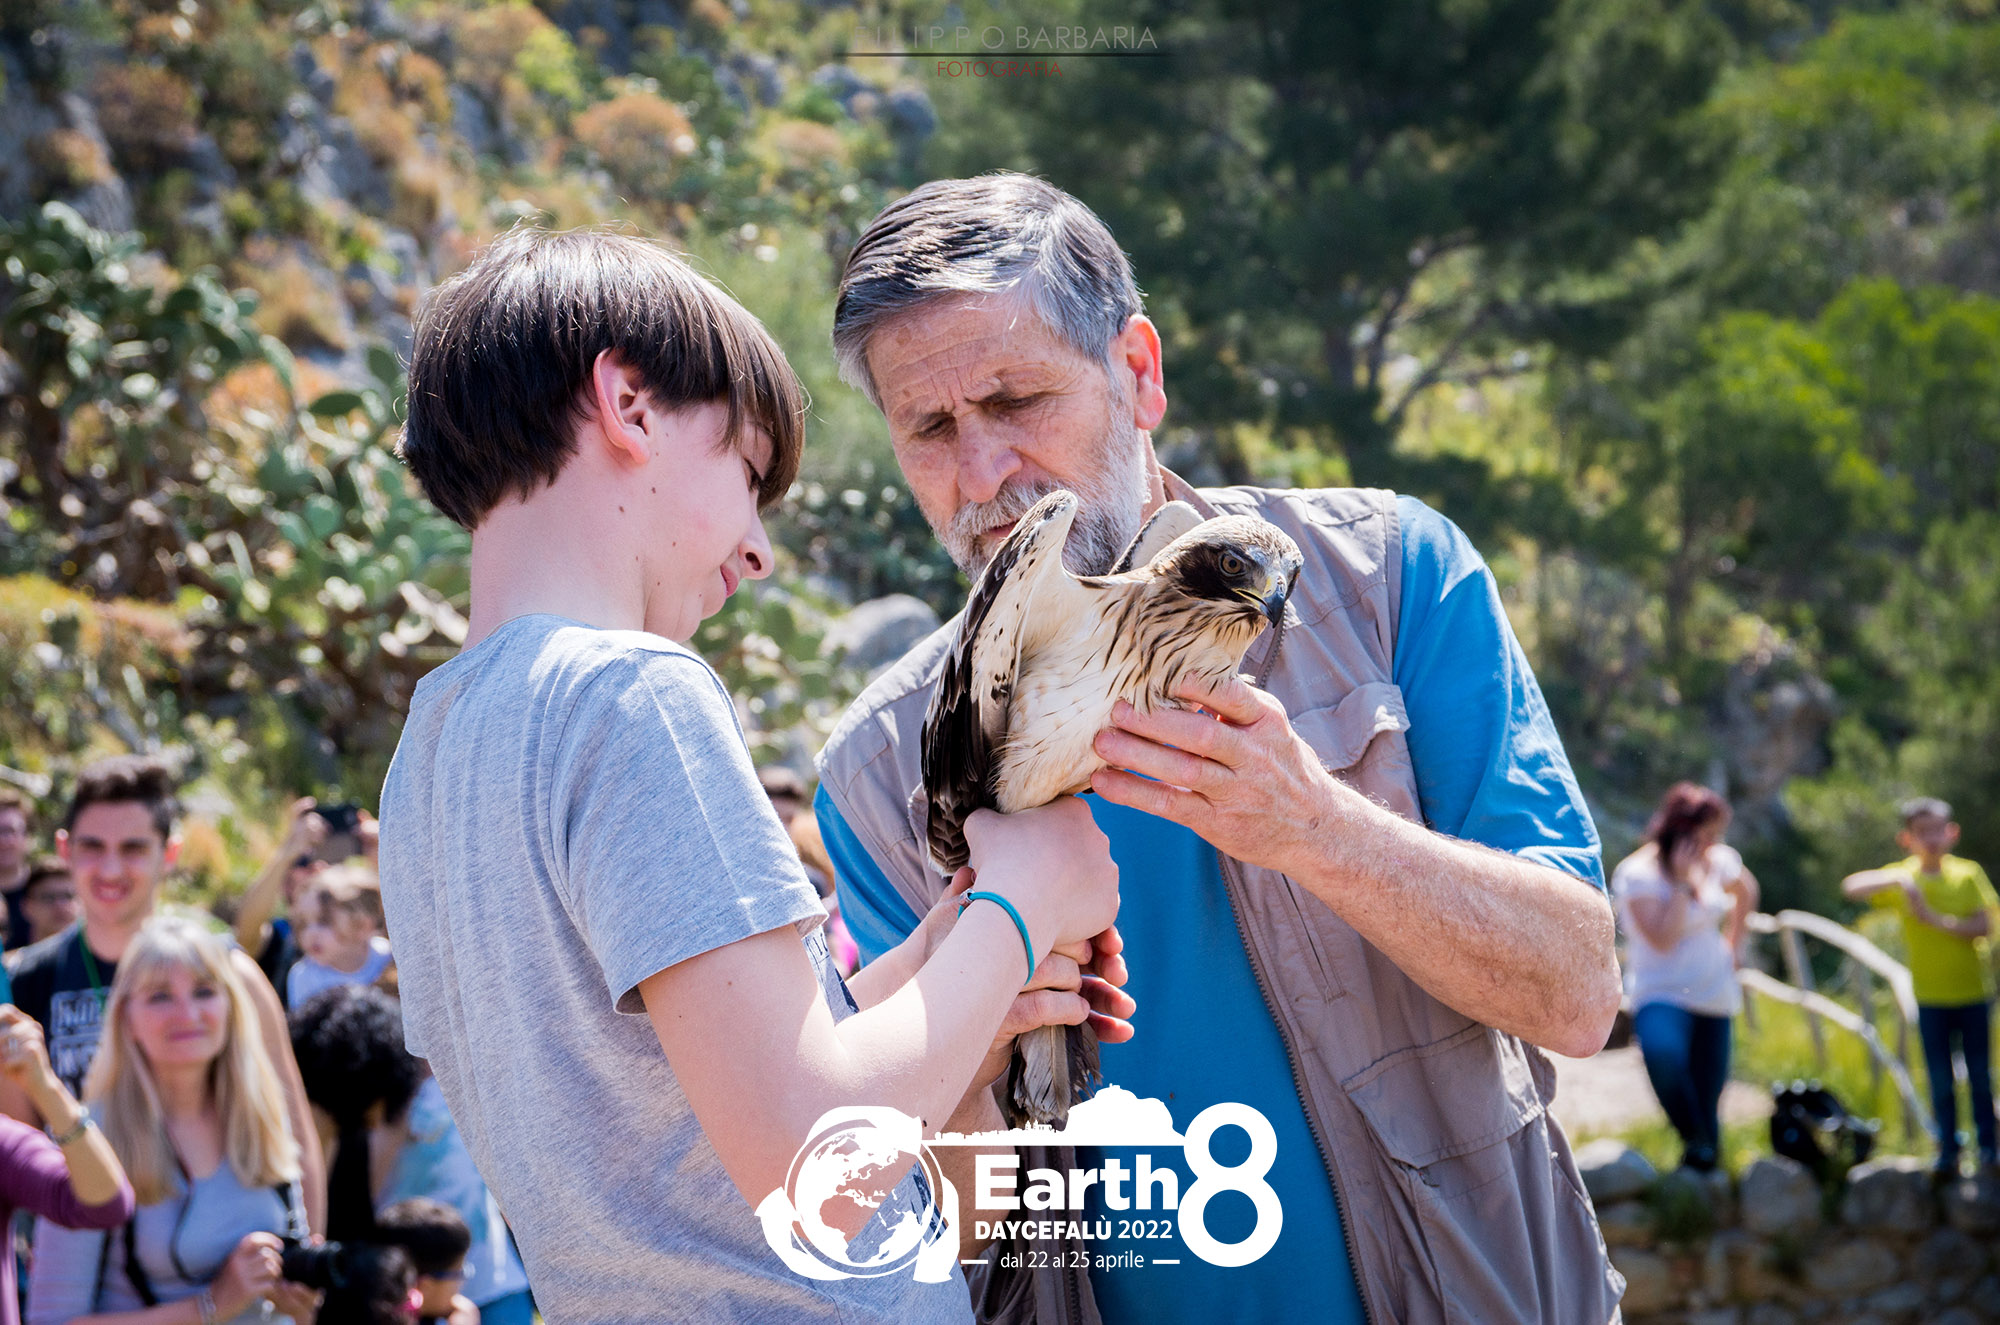 Earth Day Cefalù 2022 - Escursione sulla Rocca e liberazione rapaci